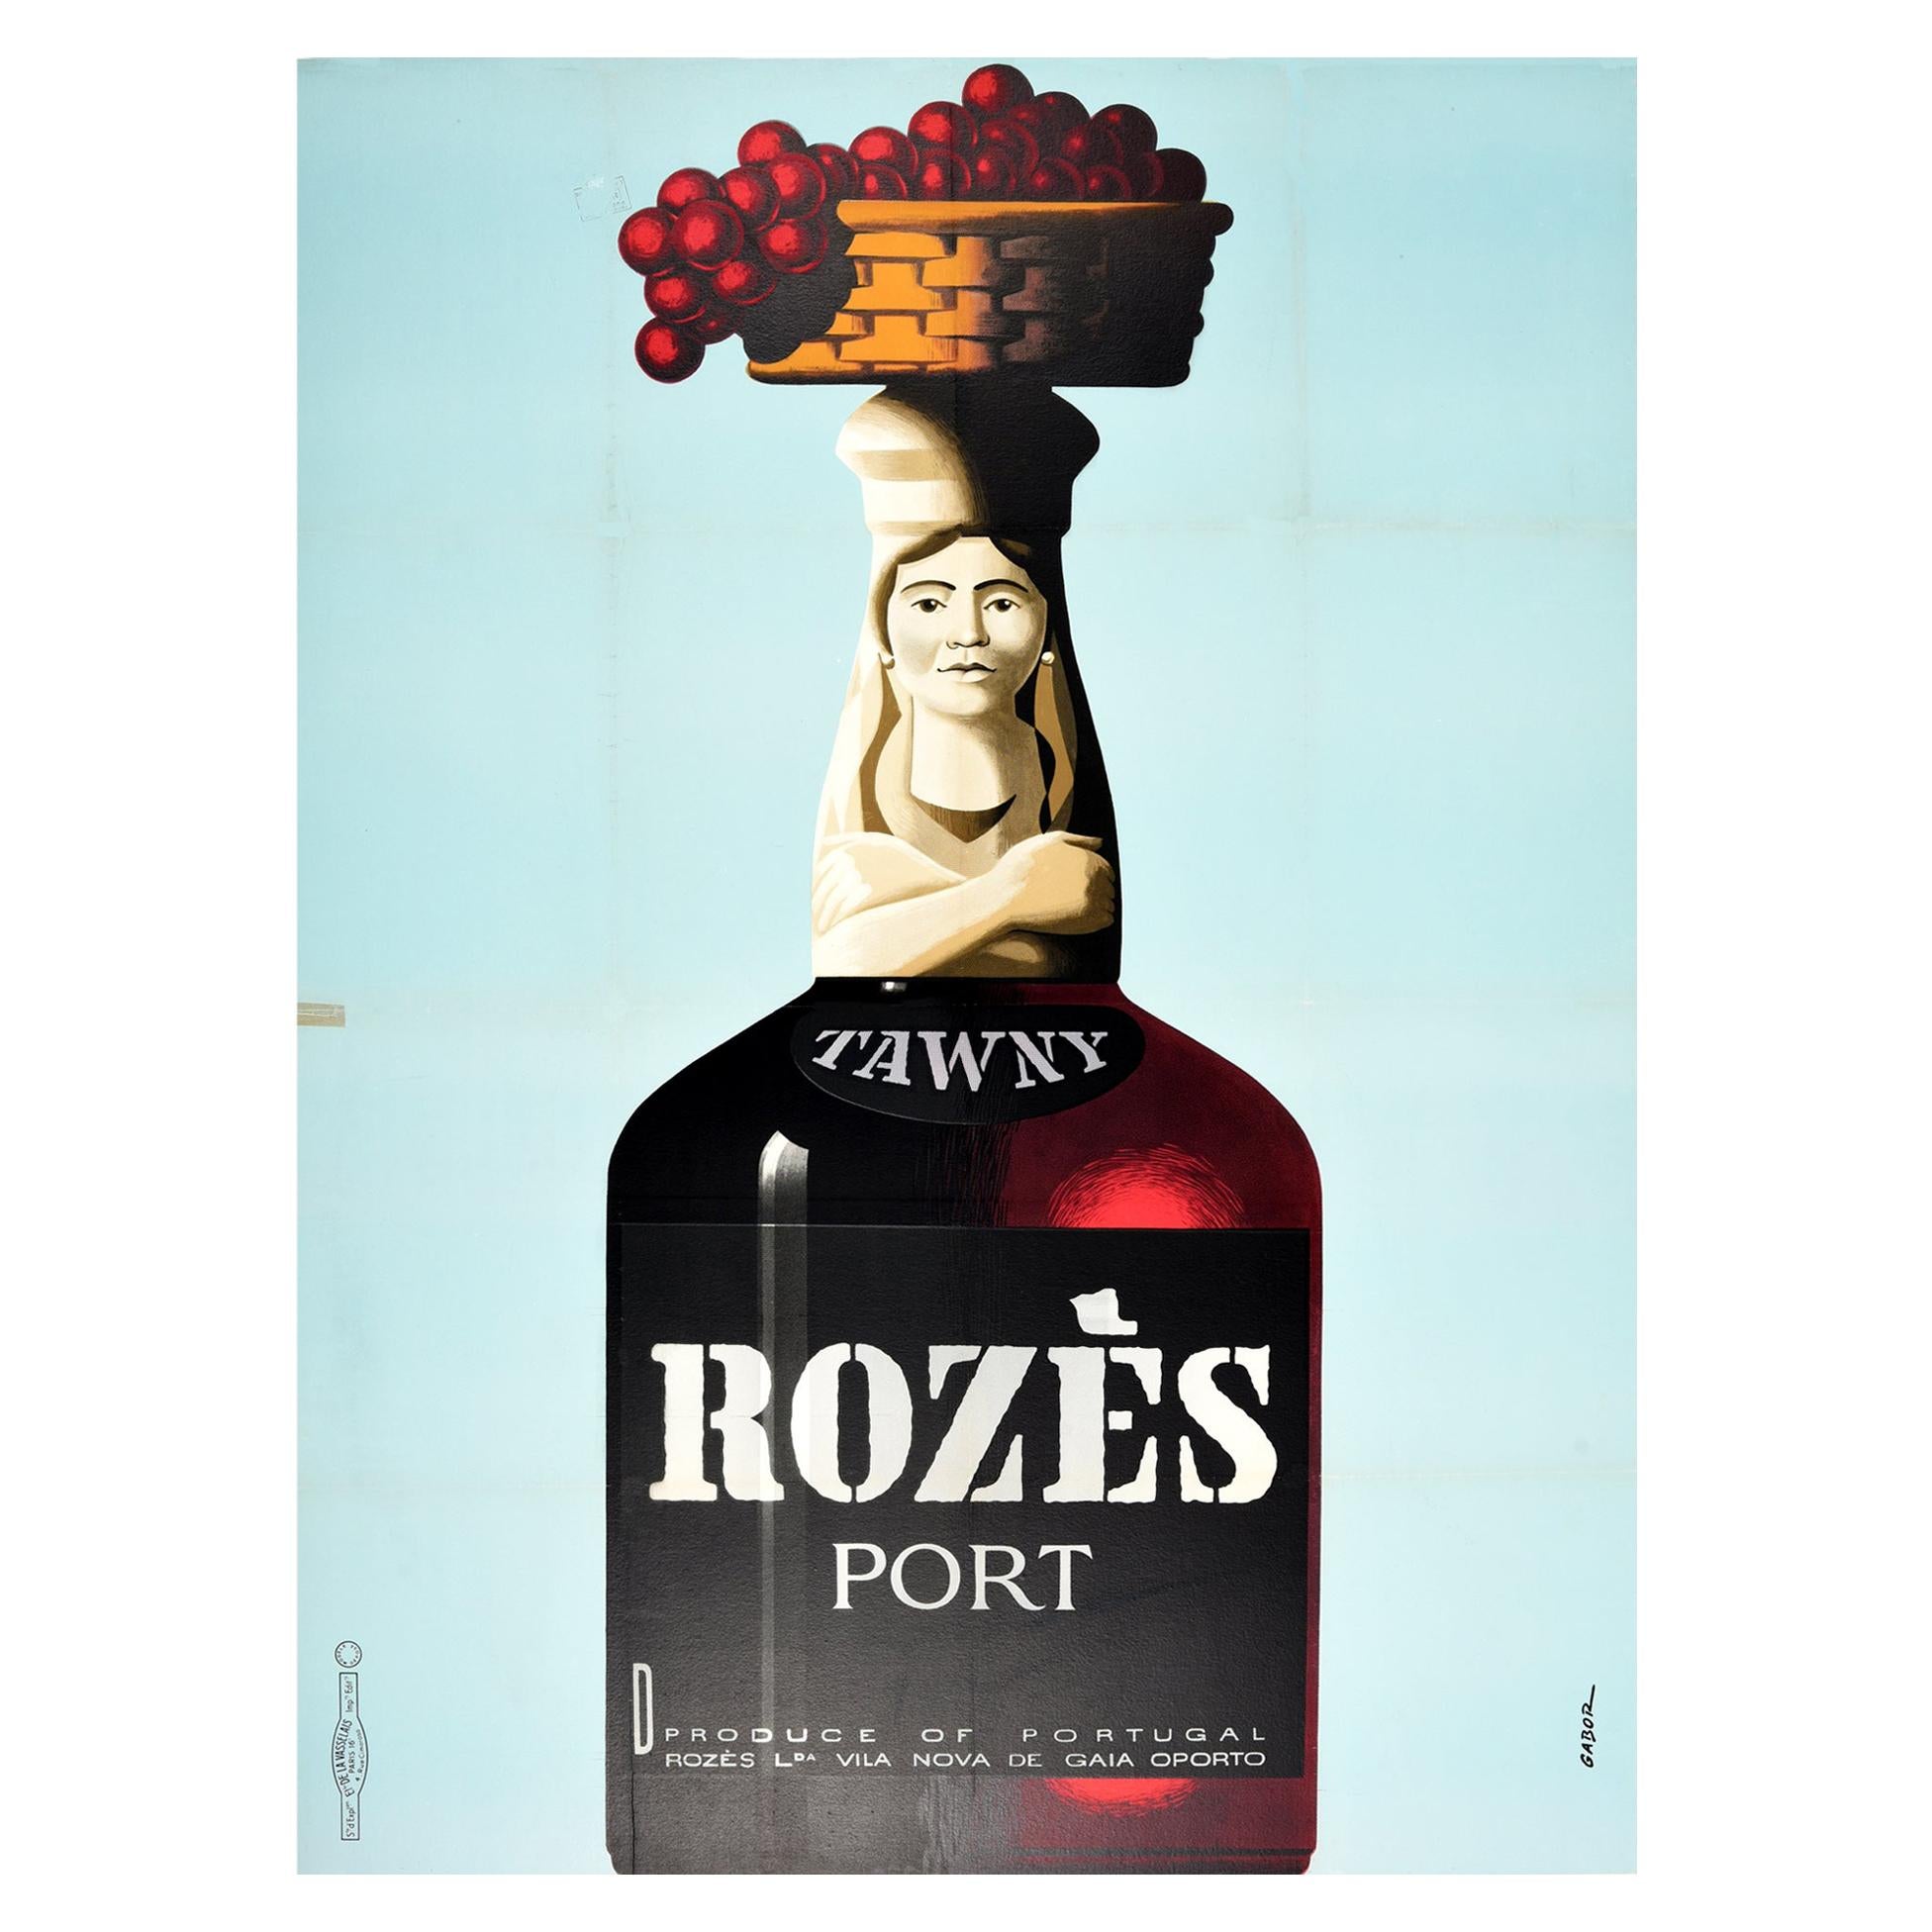 Affiche publicitaire originale pour les boissons Tawny Rozes Port Wine Portugal Oporto